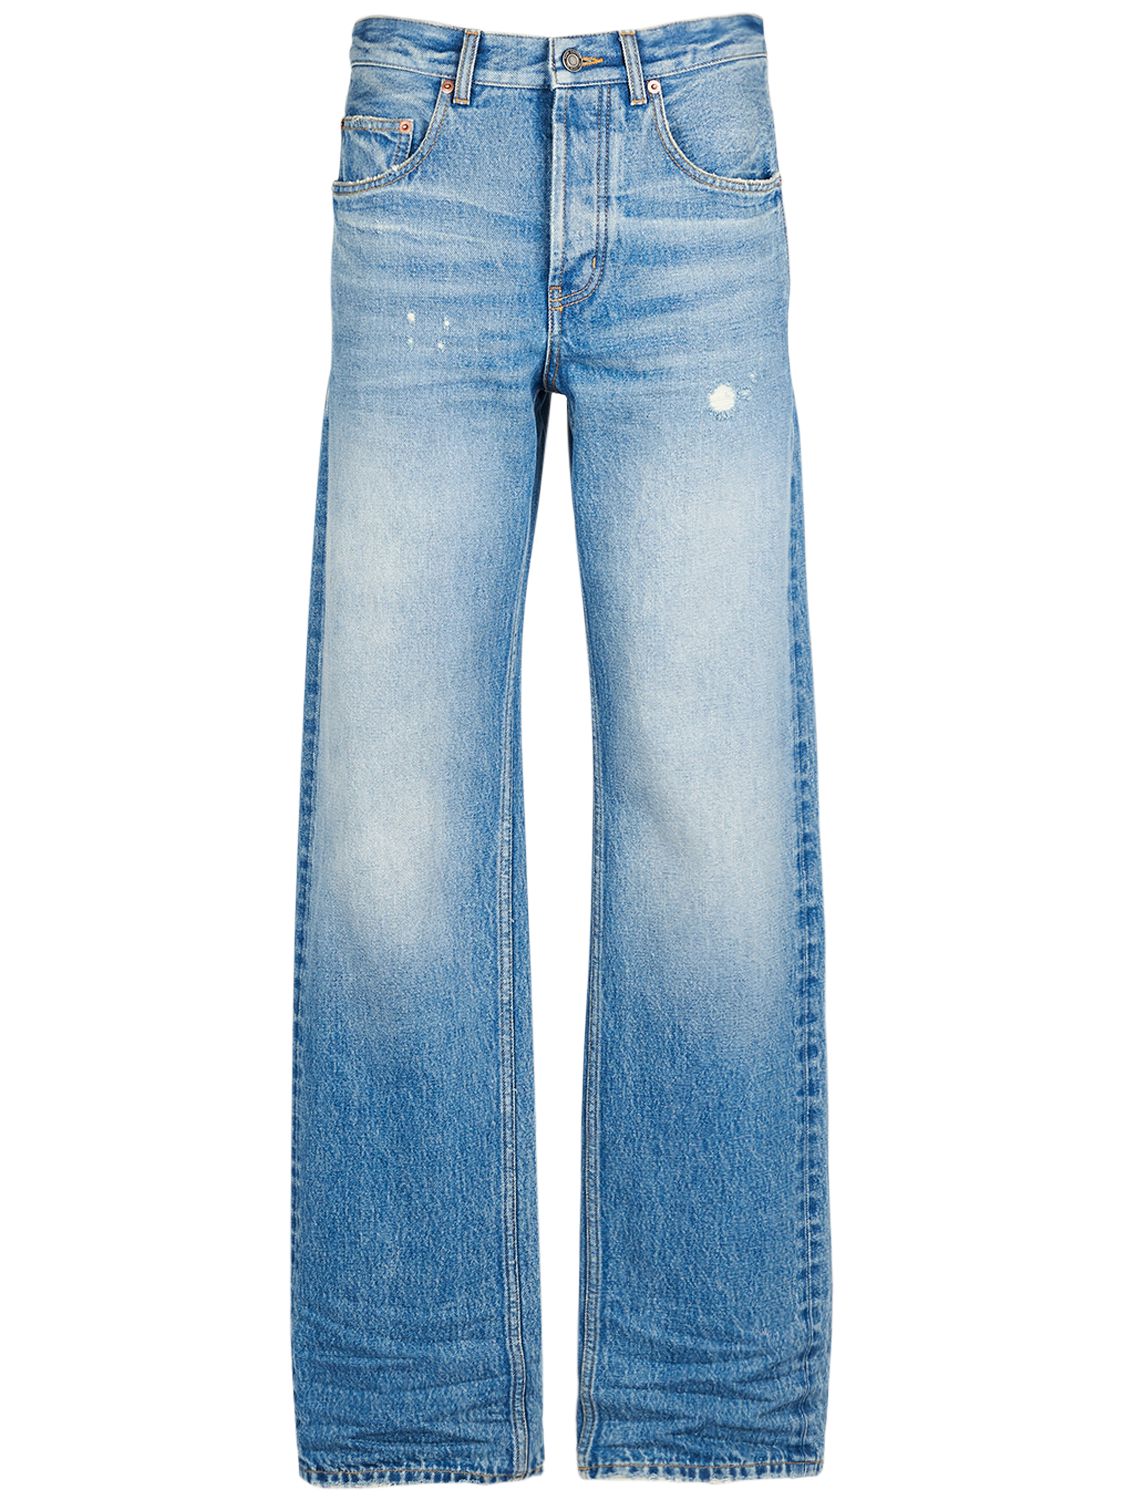 Mujer Jeans Anchos De Denim De Algodón 26 - SAINT LAURENT - Modalova